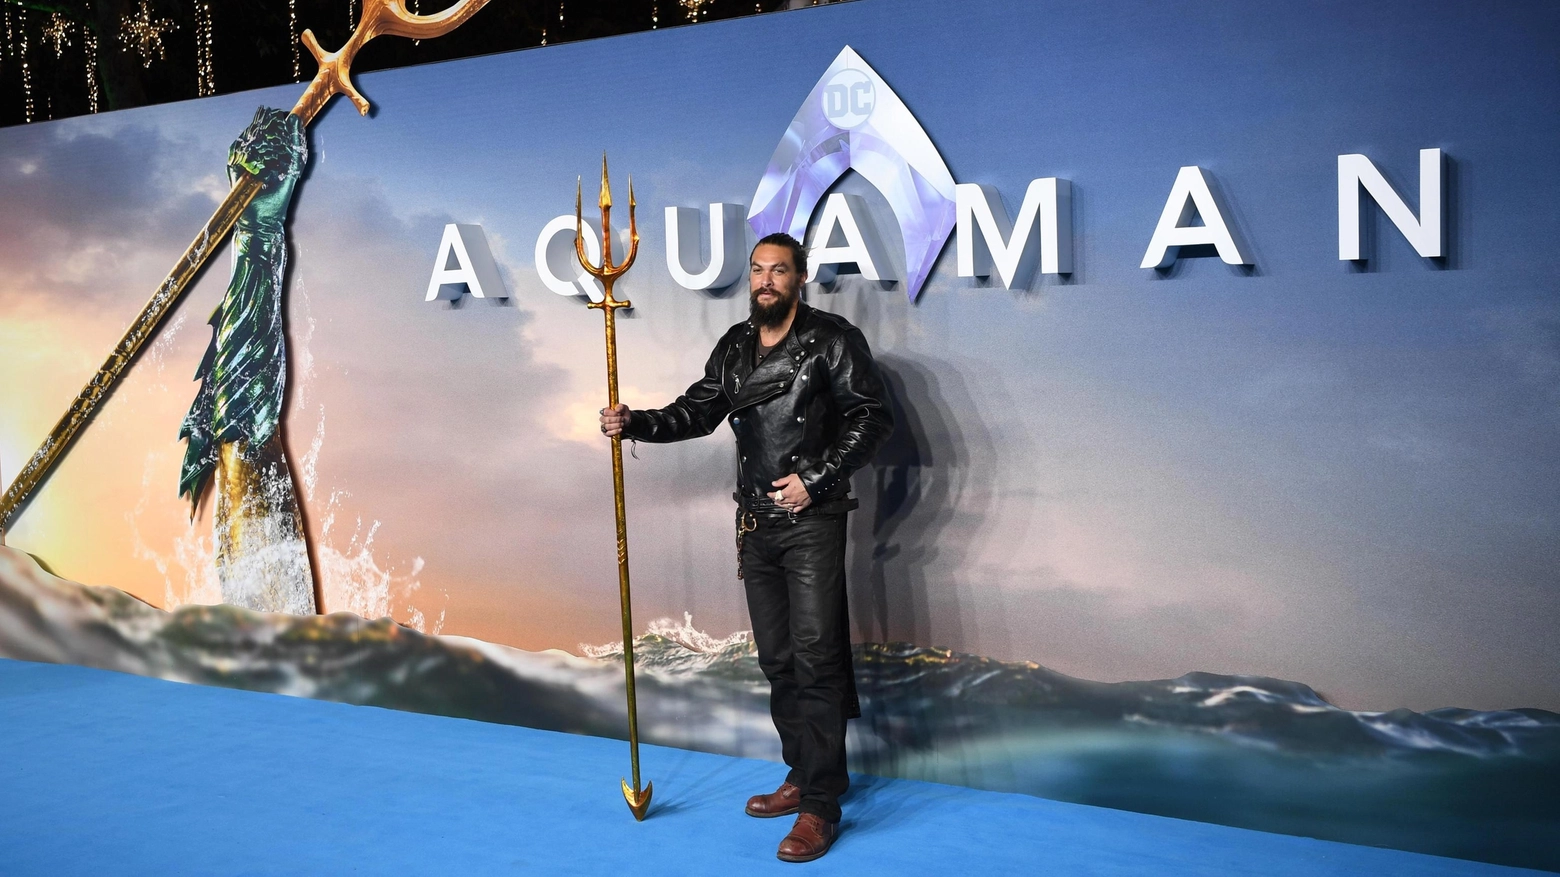 Aquaman 2 - Il regno perduto': quando esce, trama e cast